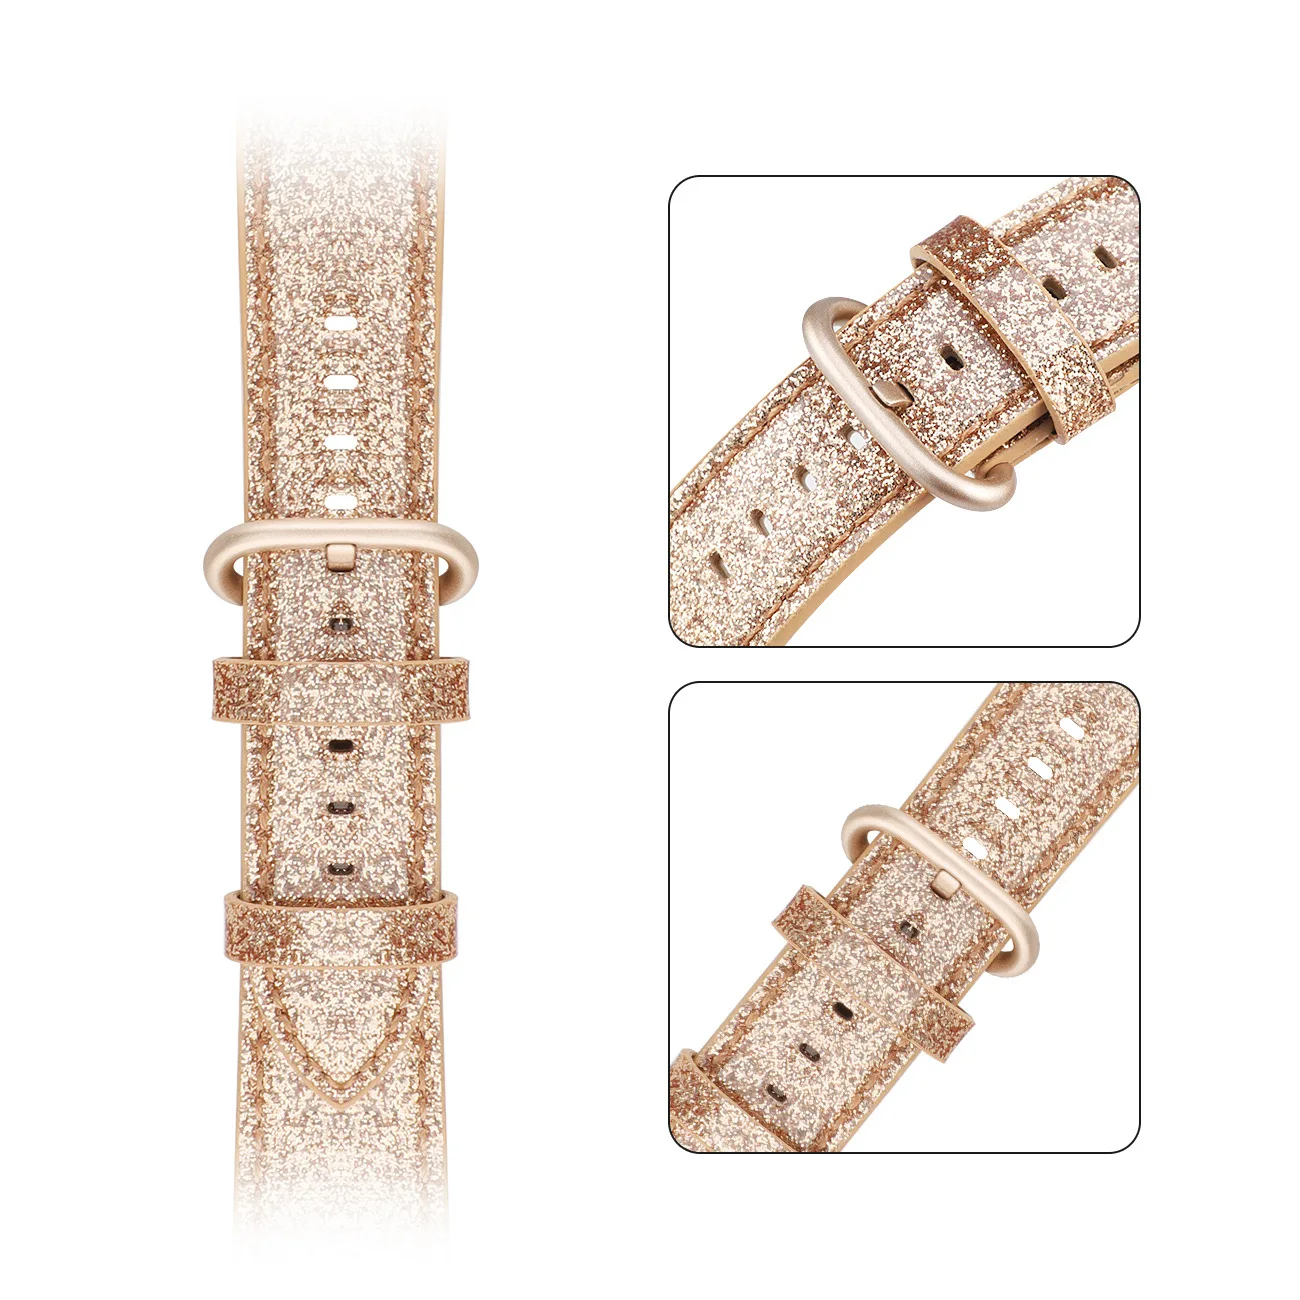 Узкая петля для Apple Watch кожаный ремешок 40 мм 44 мм для iwatch 38 мм 42 мм ремешок серии 5 4 3 2 1 розовое золото Рождество